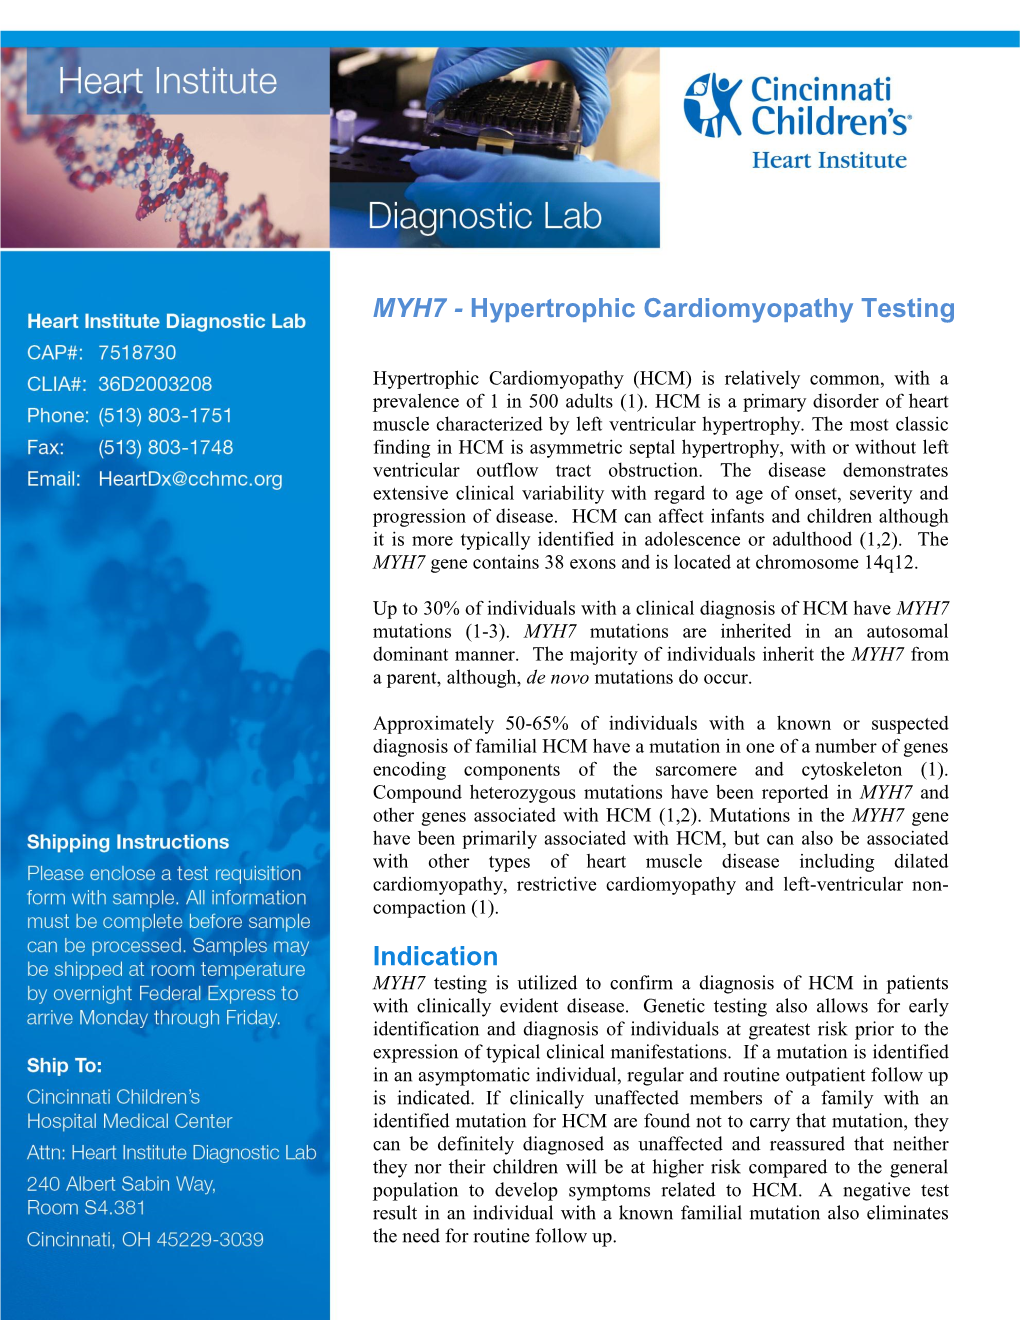 MYH7 - Hypertrophic Cardiomyopathy Testing